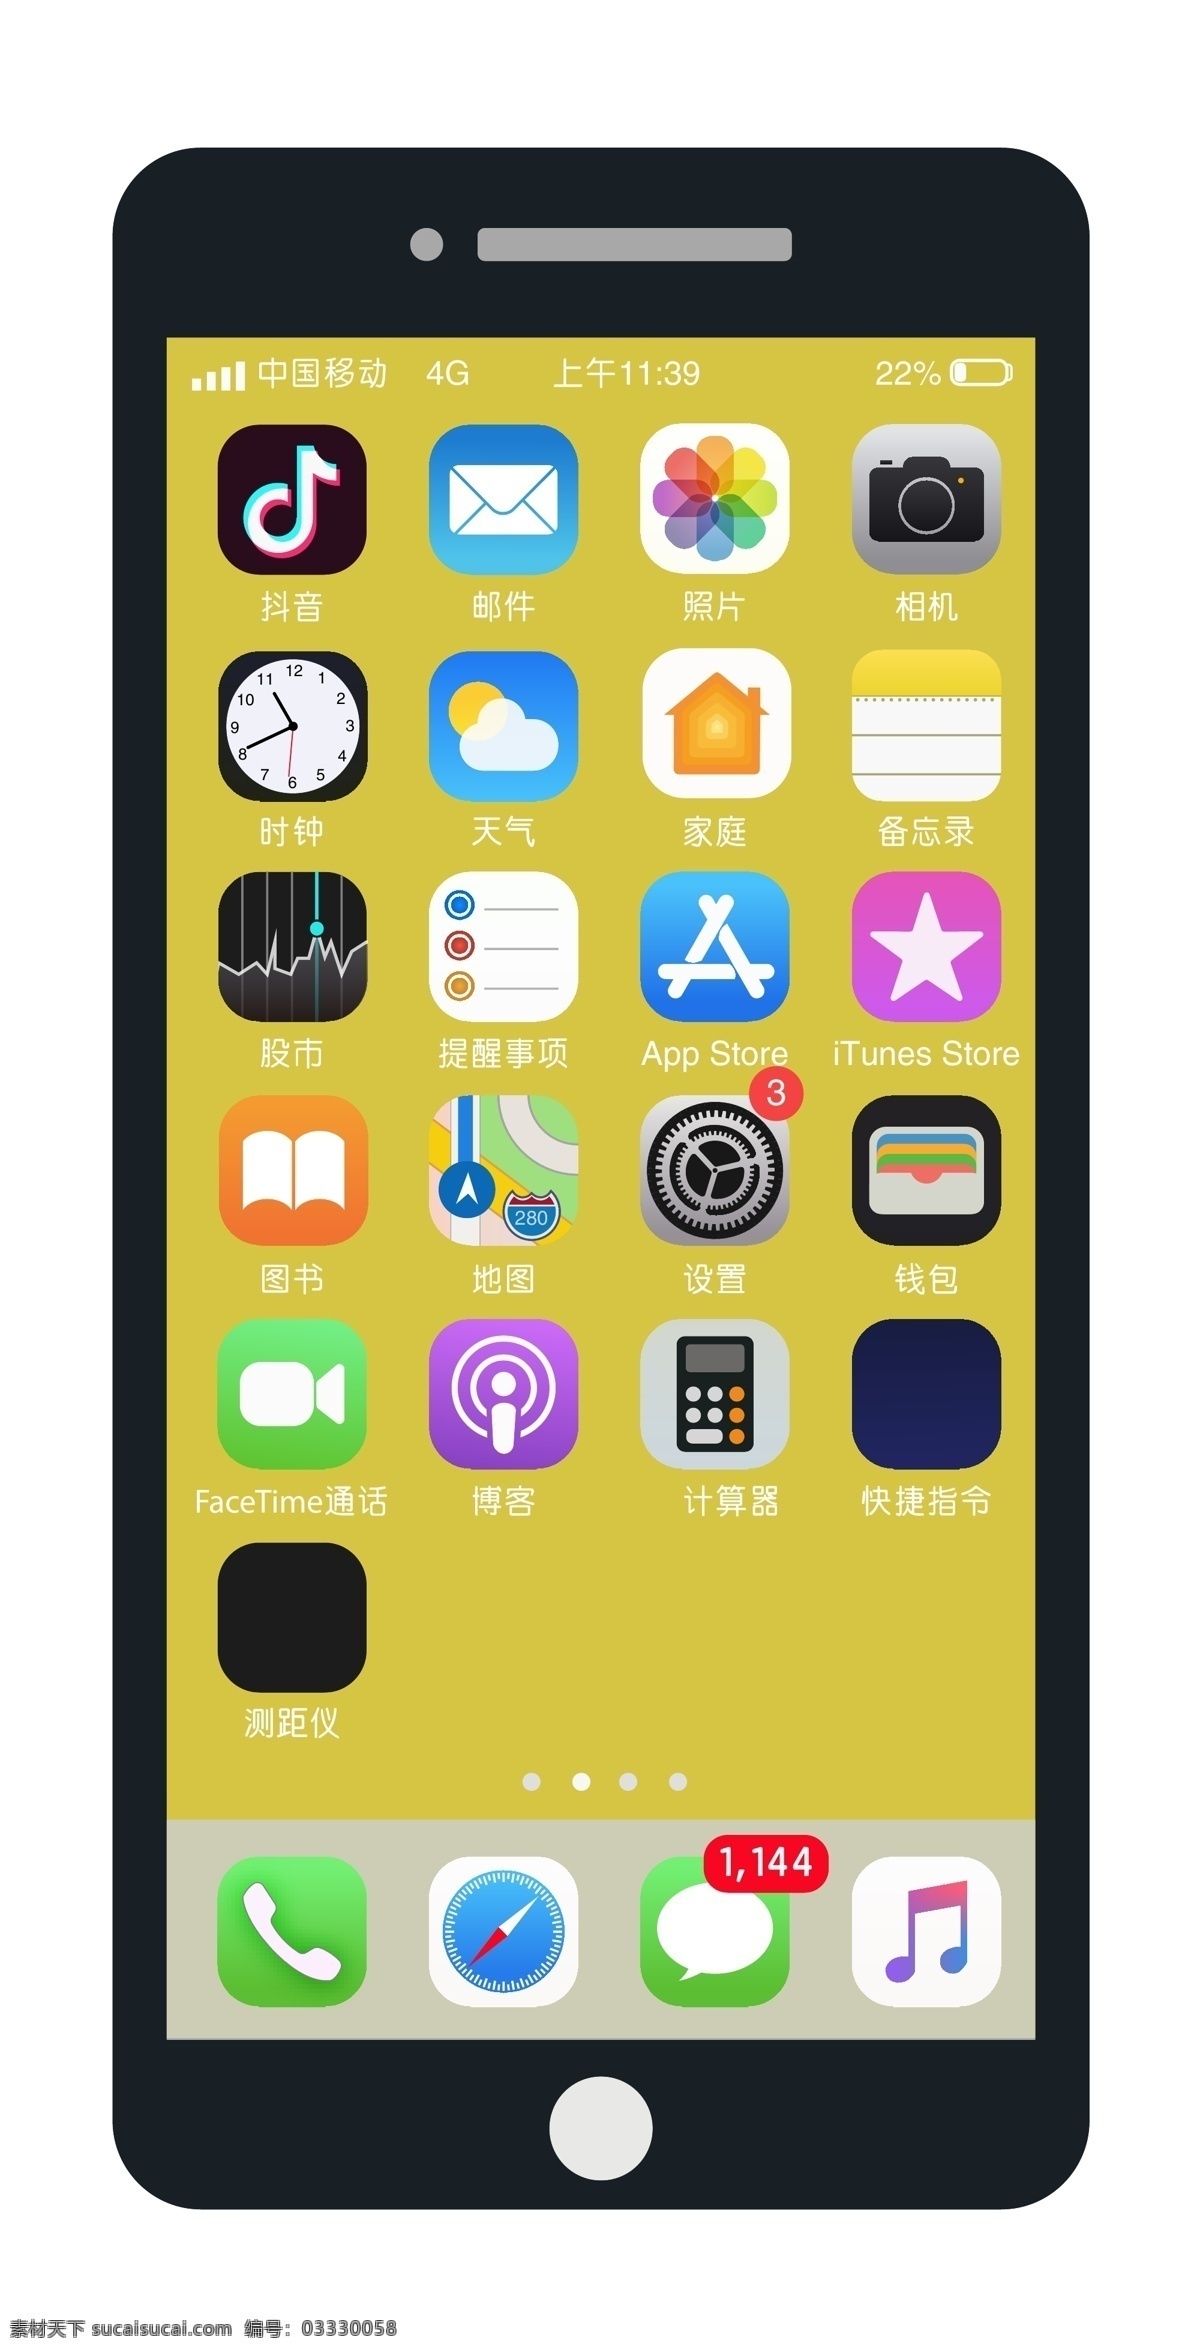 苹果 手机 图标 app图标 ui设计 手机界面设计 手机图标 抖音 app iphone 界面 移动界面设计 图标设计